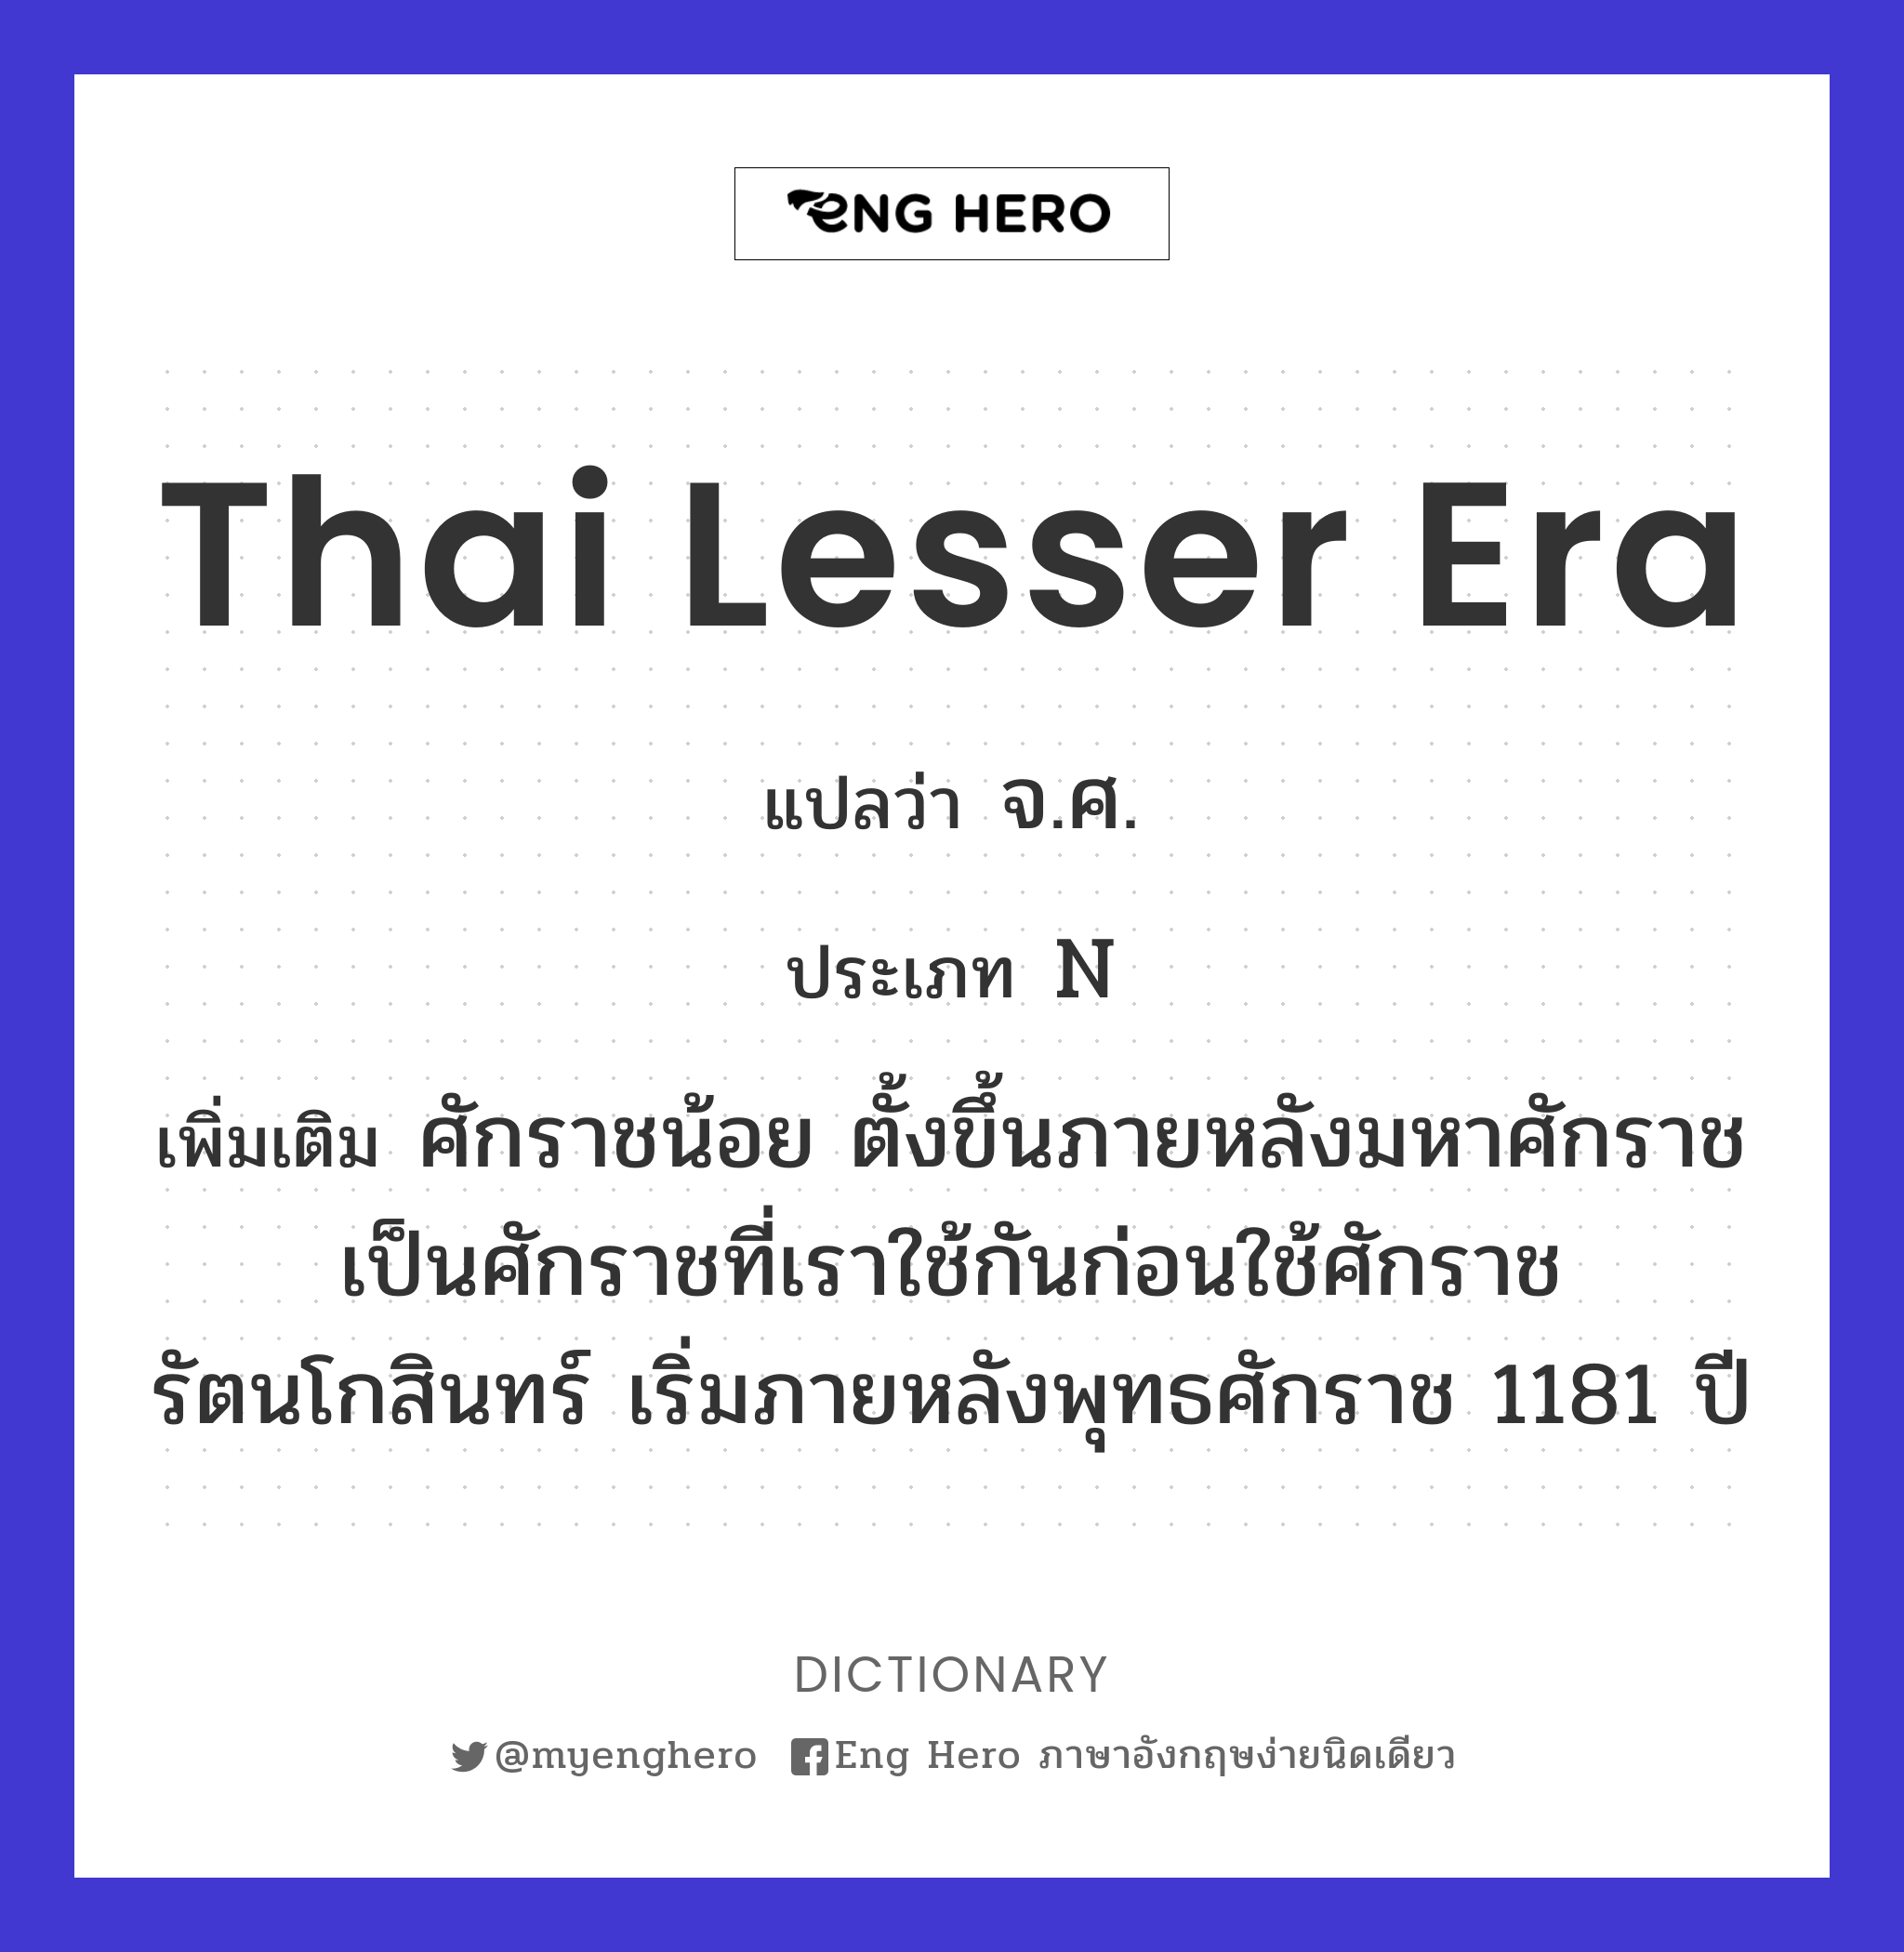 Thai lesser era